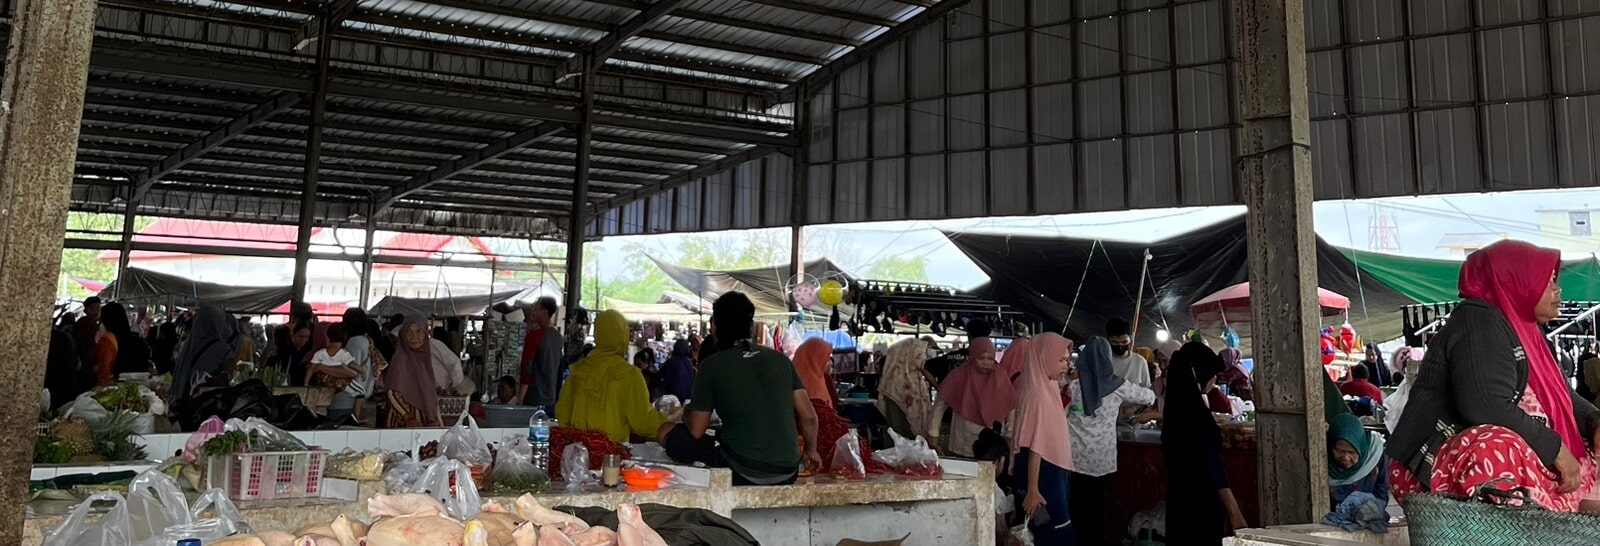 Mengulik Pasar Kalangan di Bingin Teluk Muratara, Gimana di Daerah Kamu?